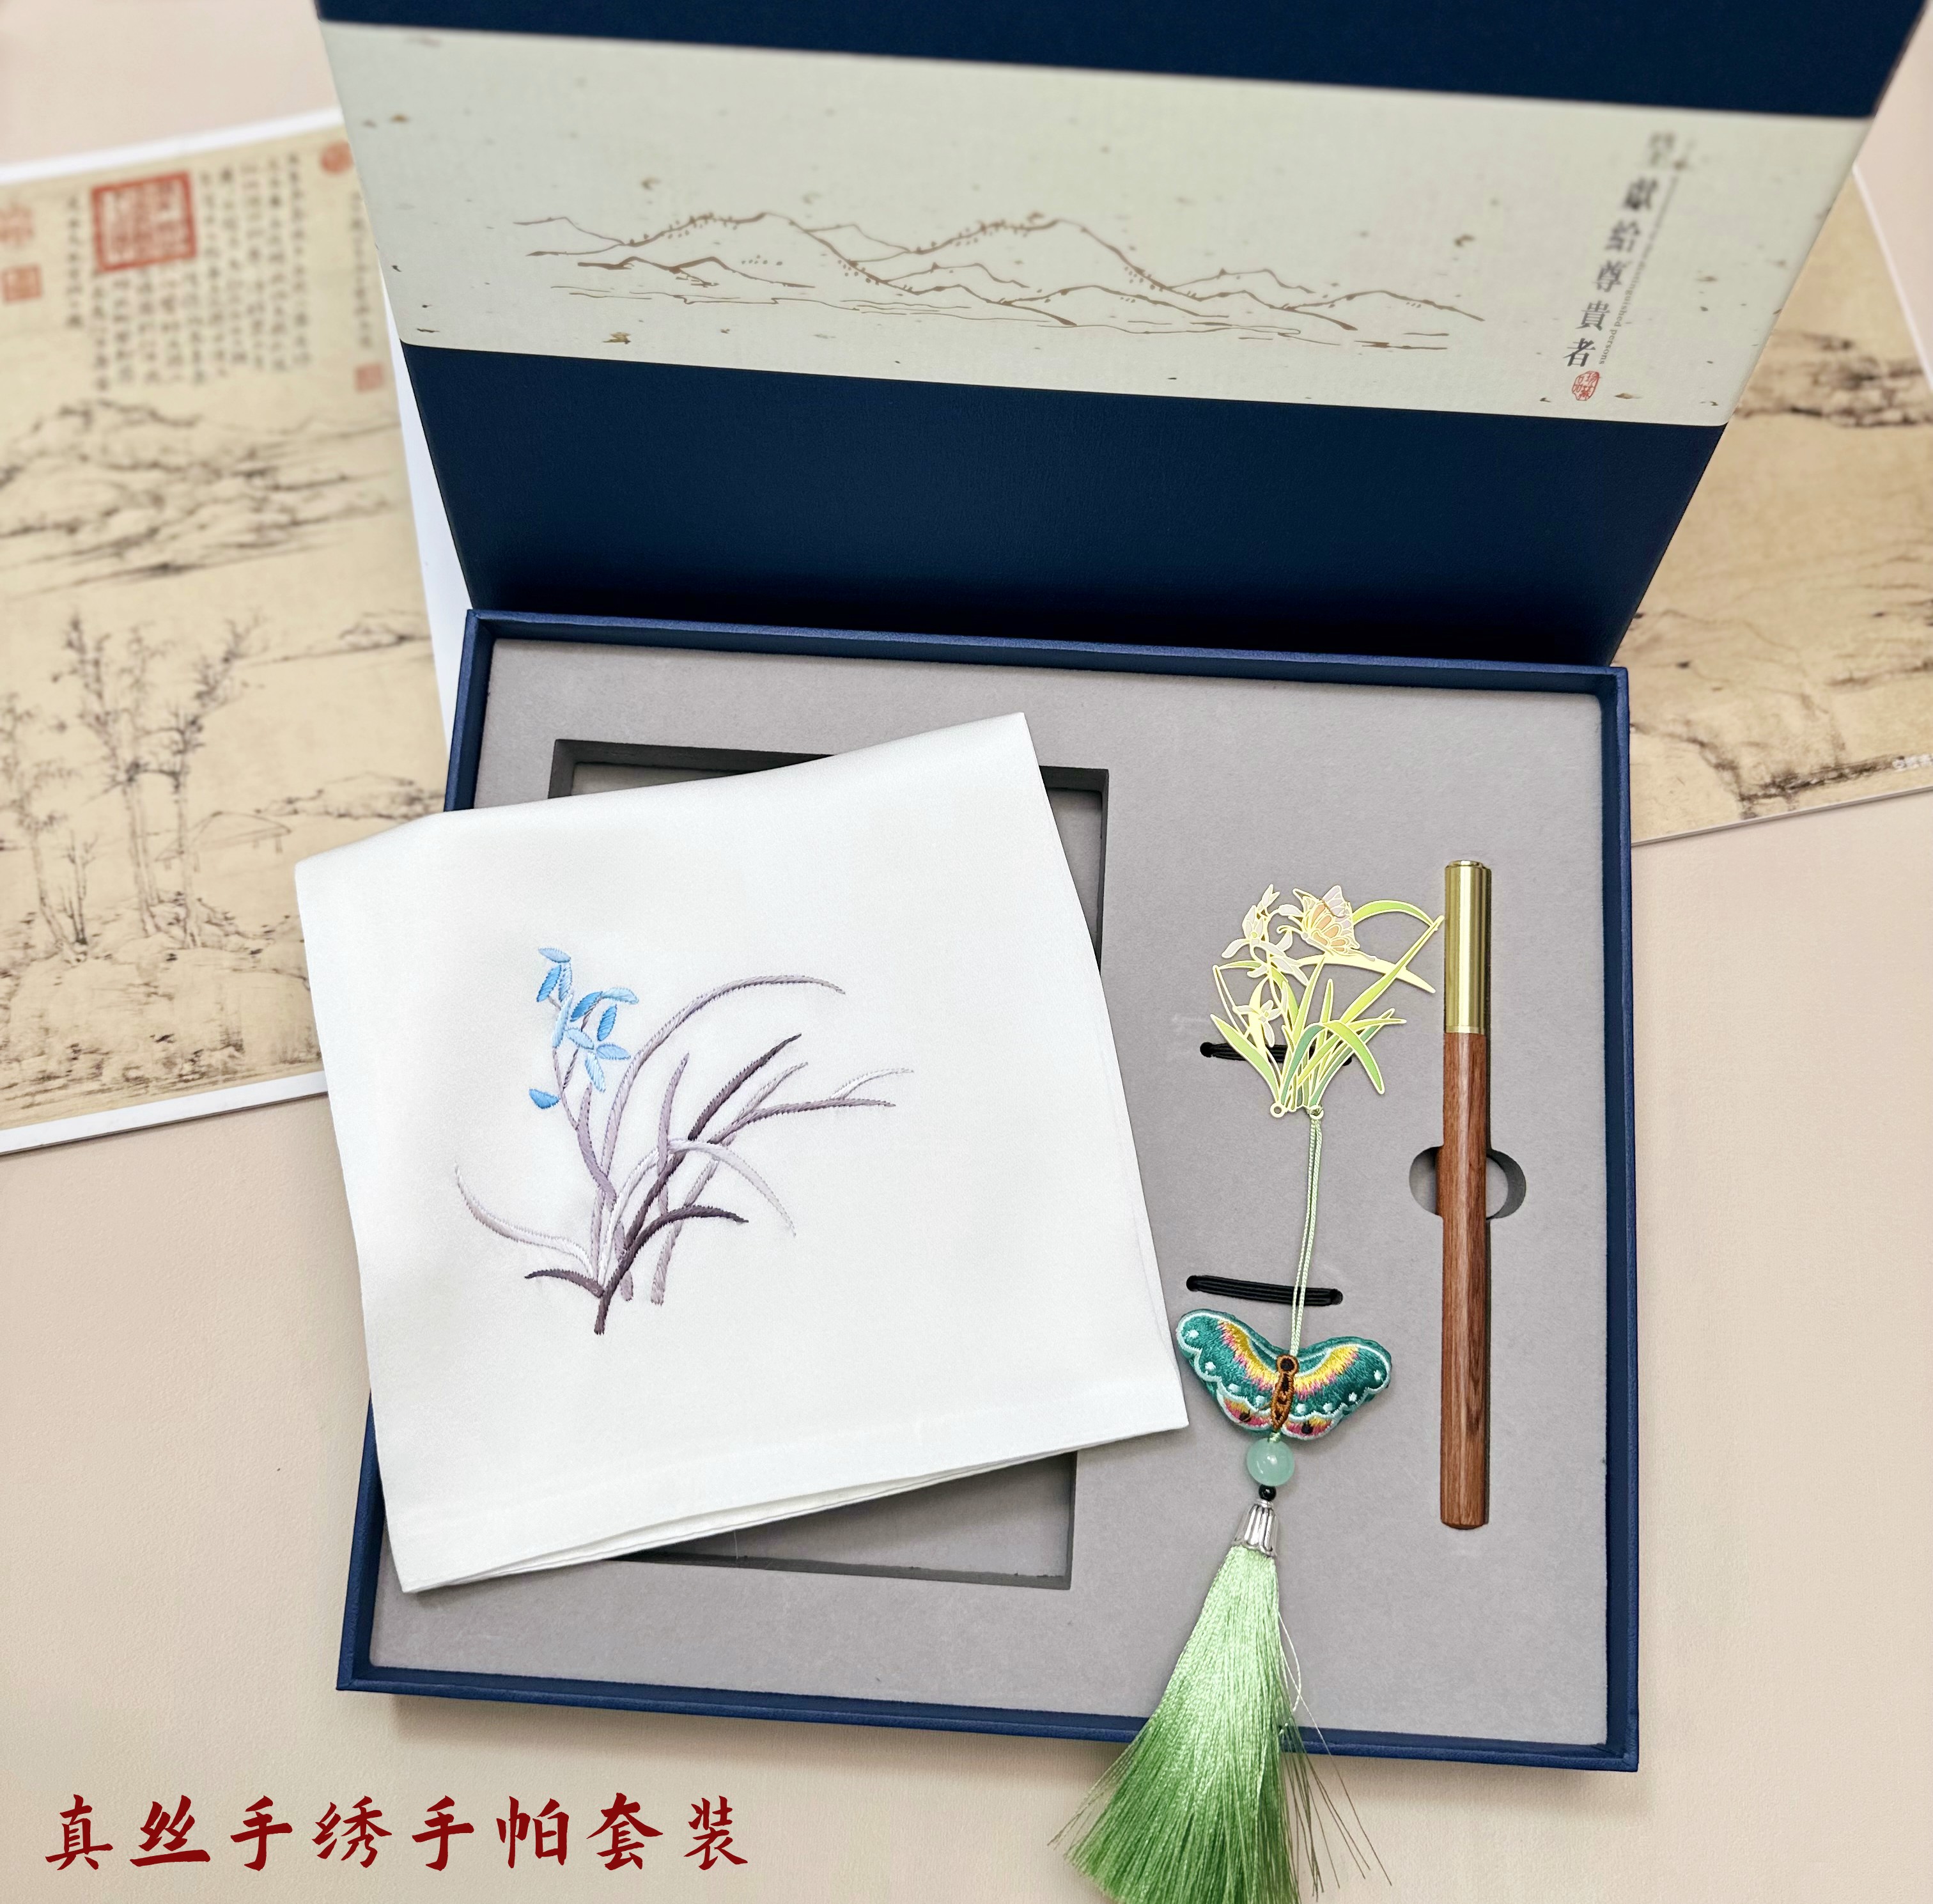 苏绣手工刺绣苏州特色礼品手帕黄铜书签笔套装中国工艺品纪念精品